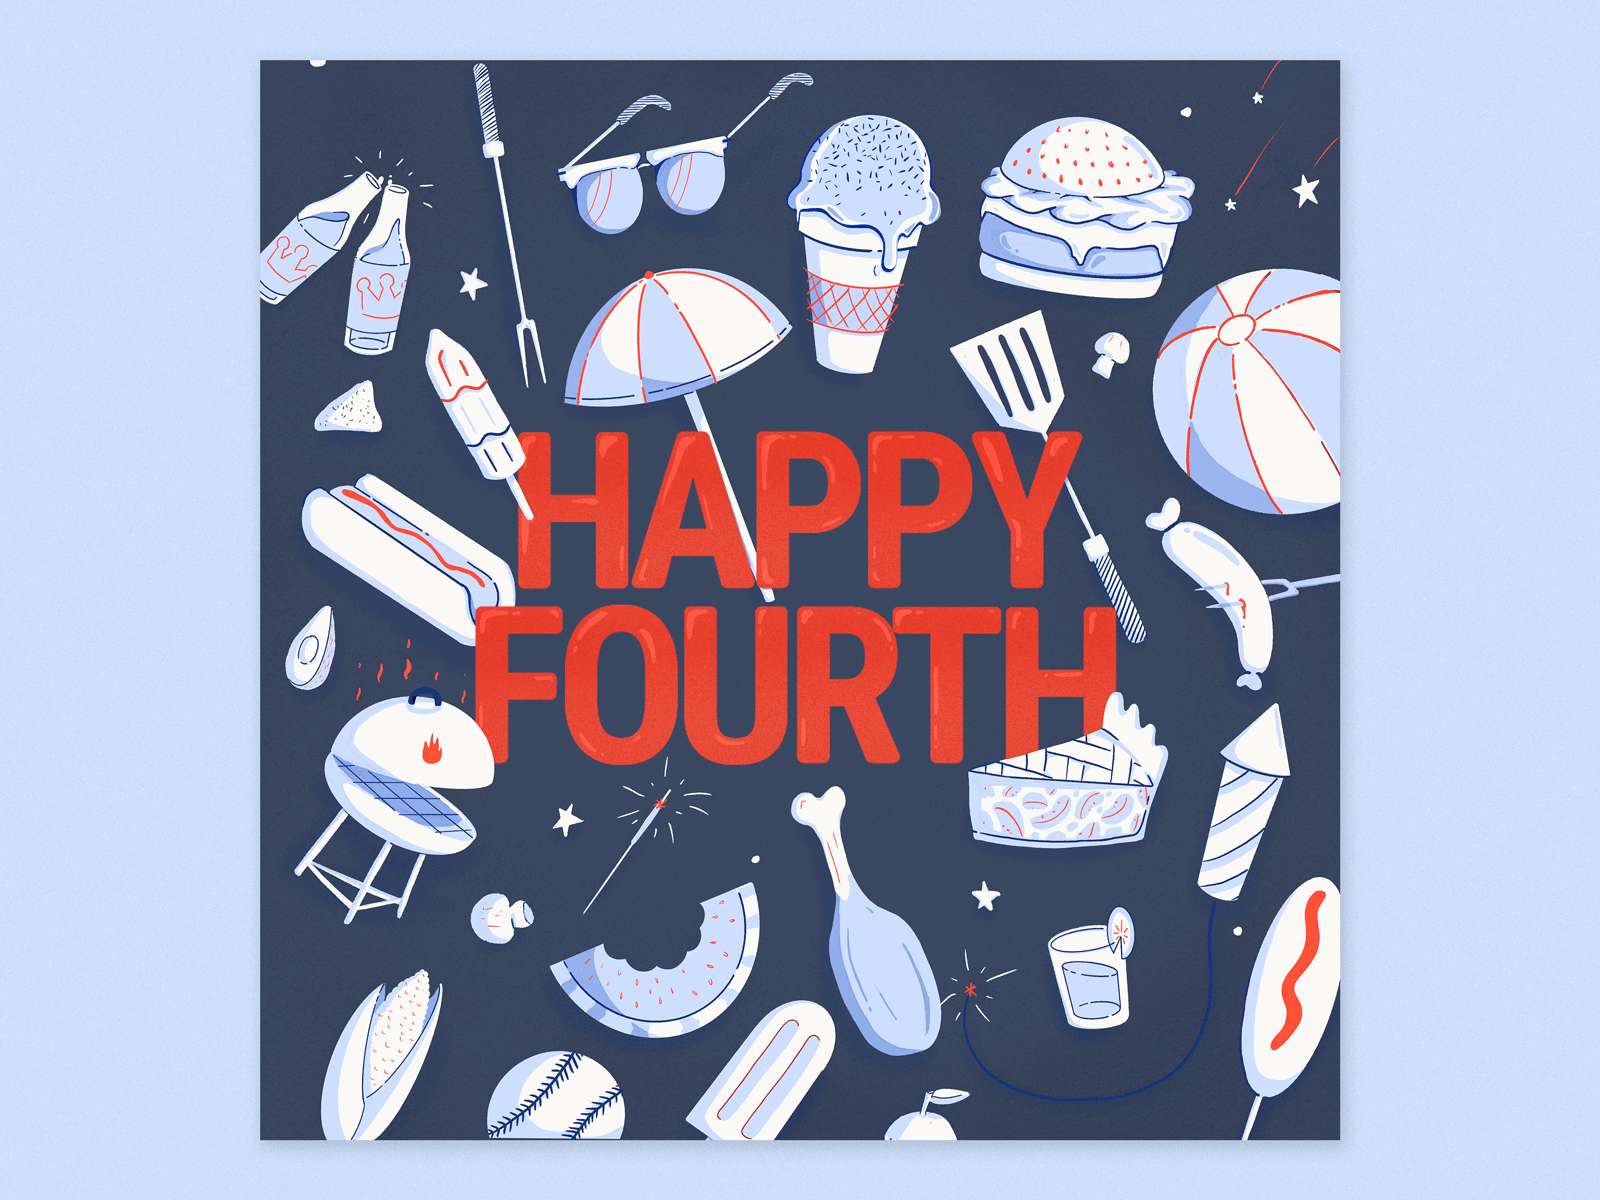 Happy Fourth!